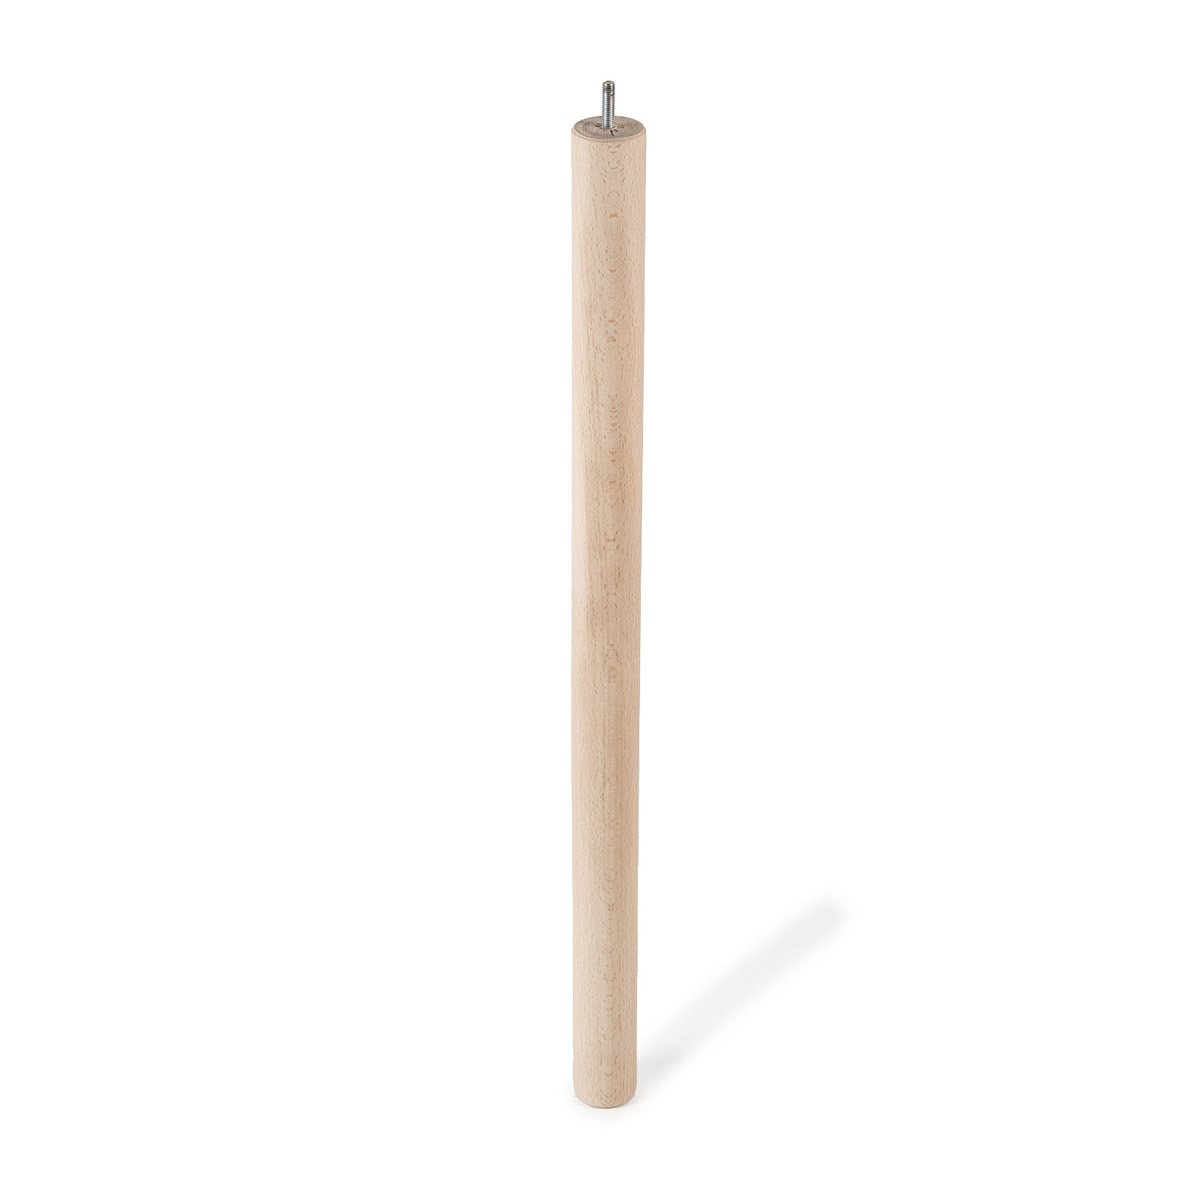 Pata de madera cilíndrica con una altura de 720 mm y acabada en haya crudo. Dimensiones: 46x46x720 mm